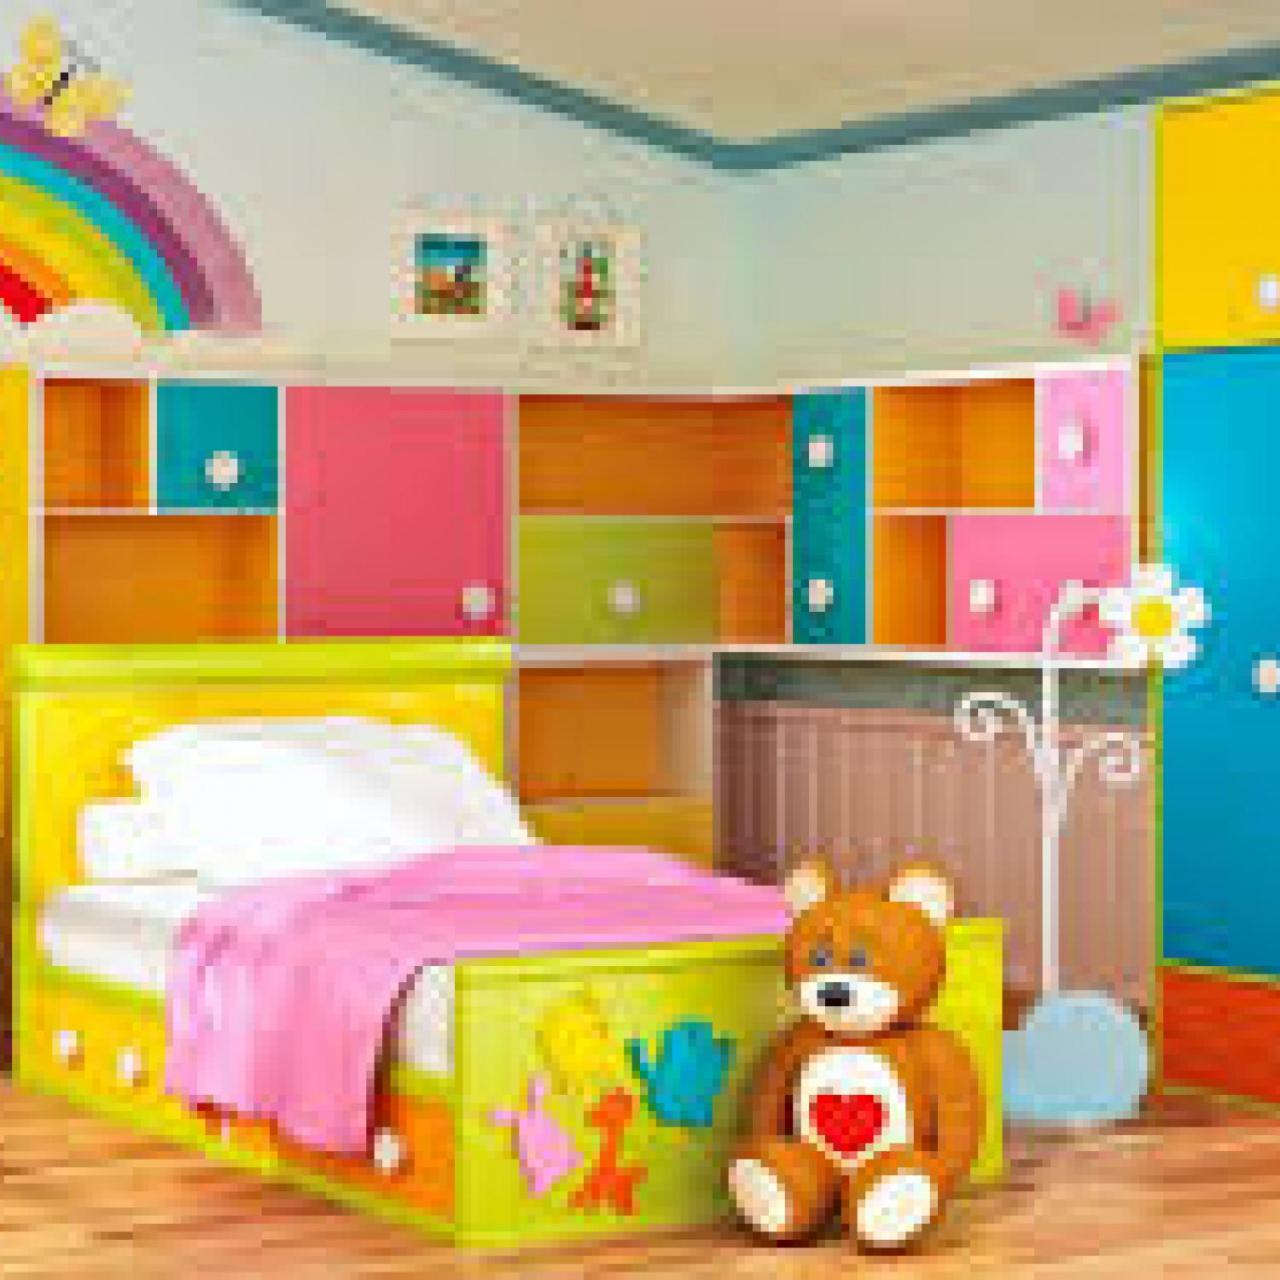 احدث غرف نوم اطفال , تصميمات قمة في الجمال لغرف نوم الاطفال صباح الورد